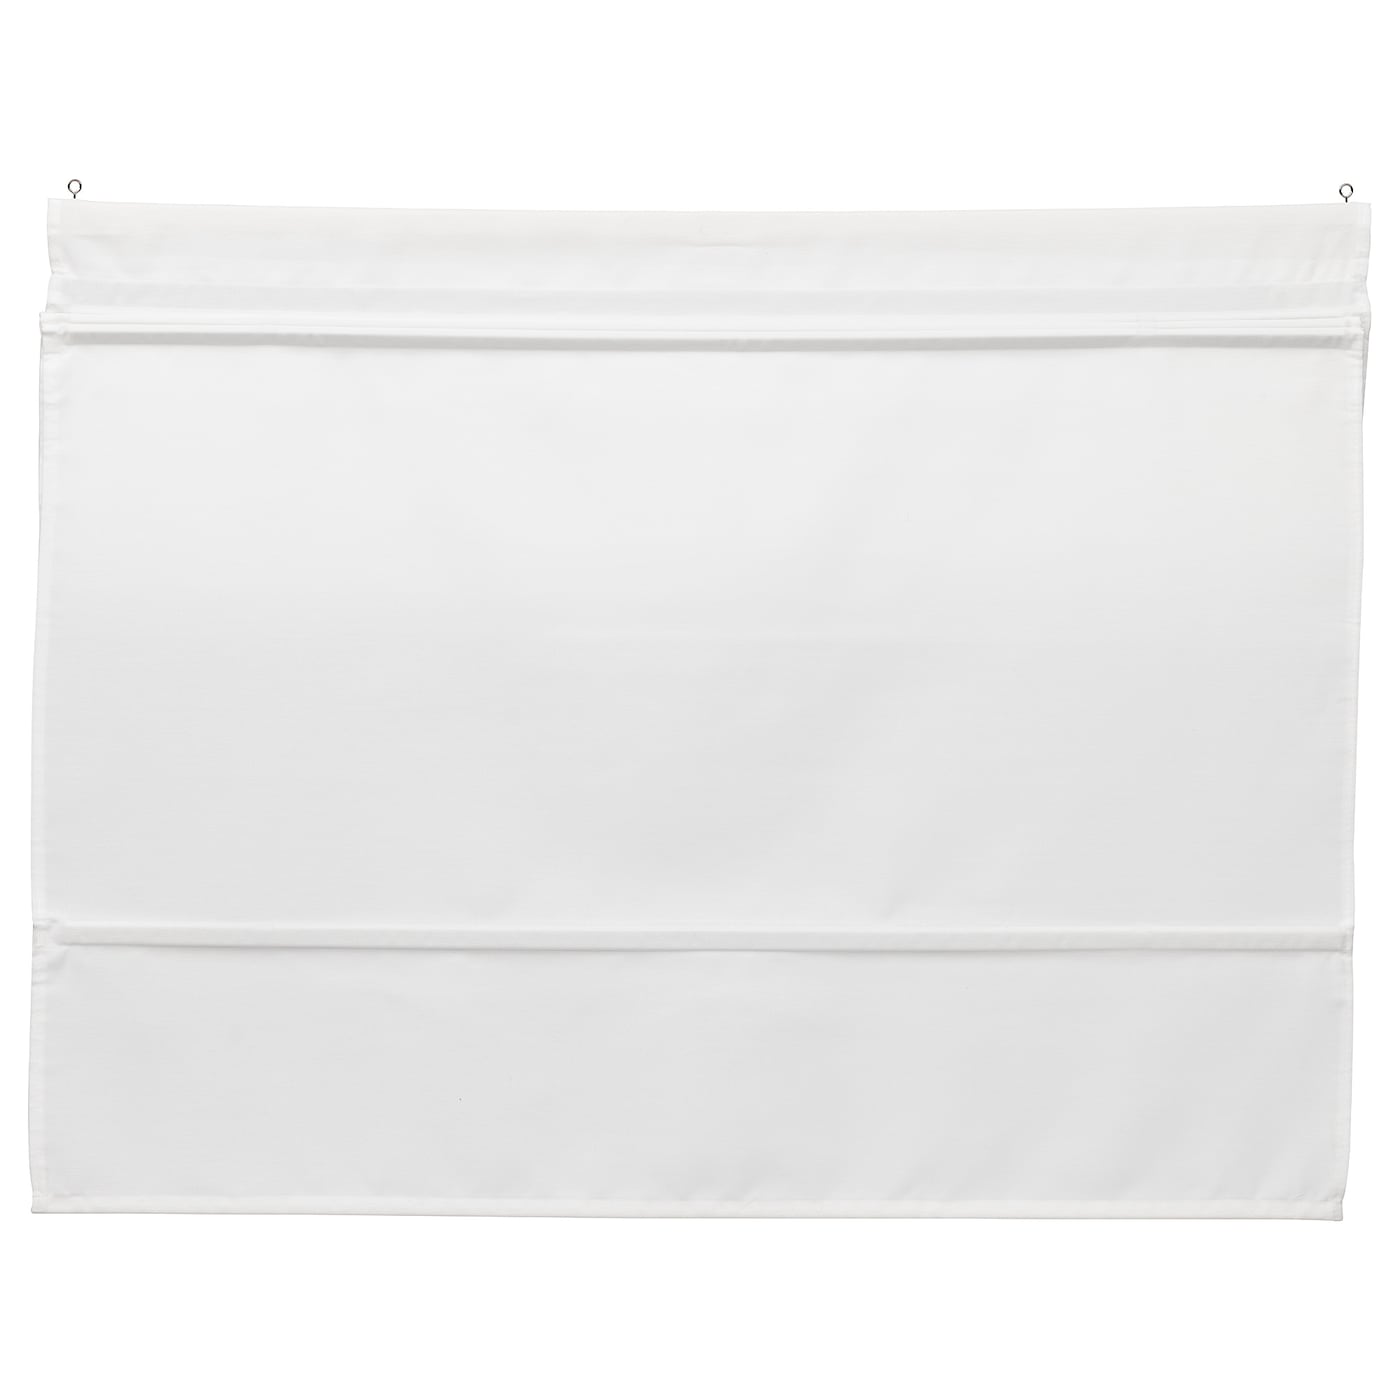 Римская штора - IKEA RINGBLOMMA, 160х80 см, белый, РИНГБЛУММА ИКЕА